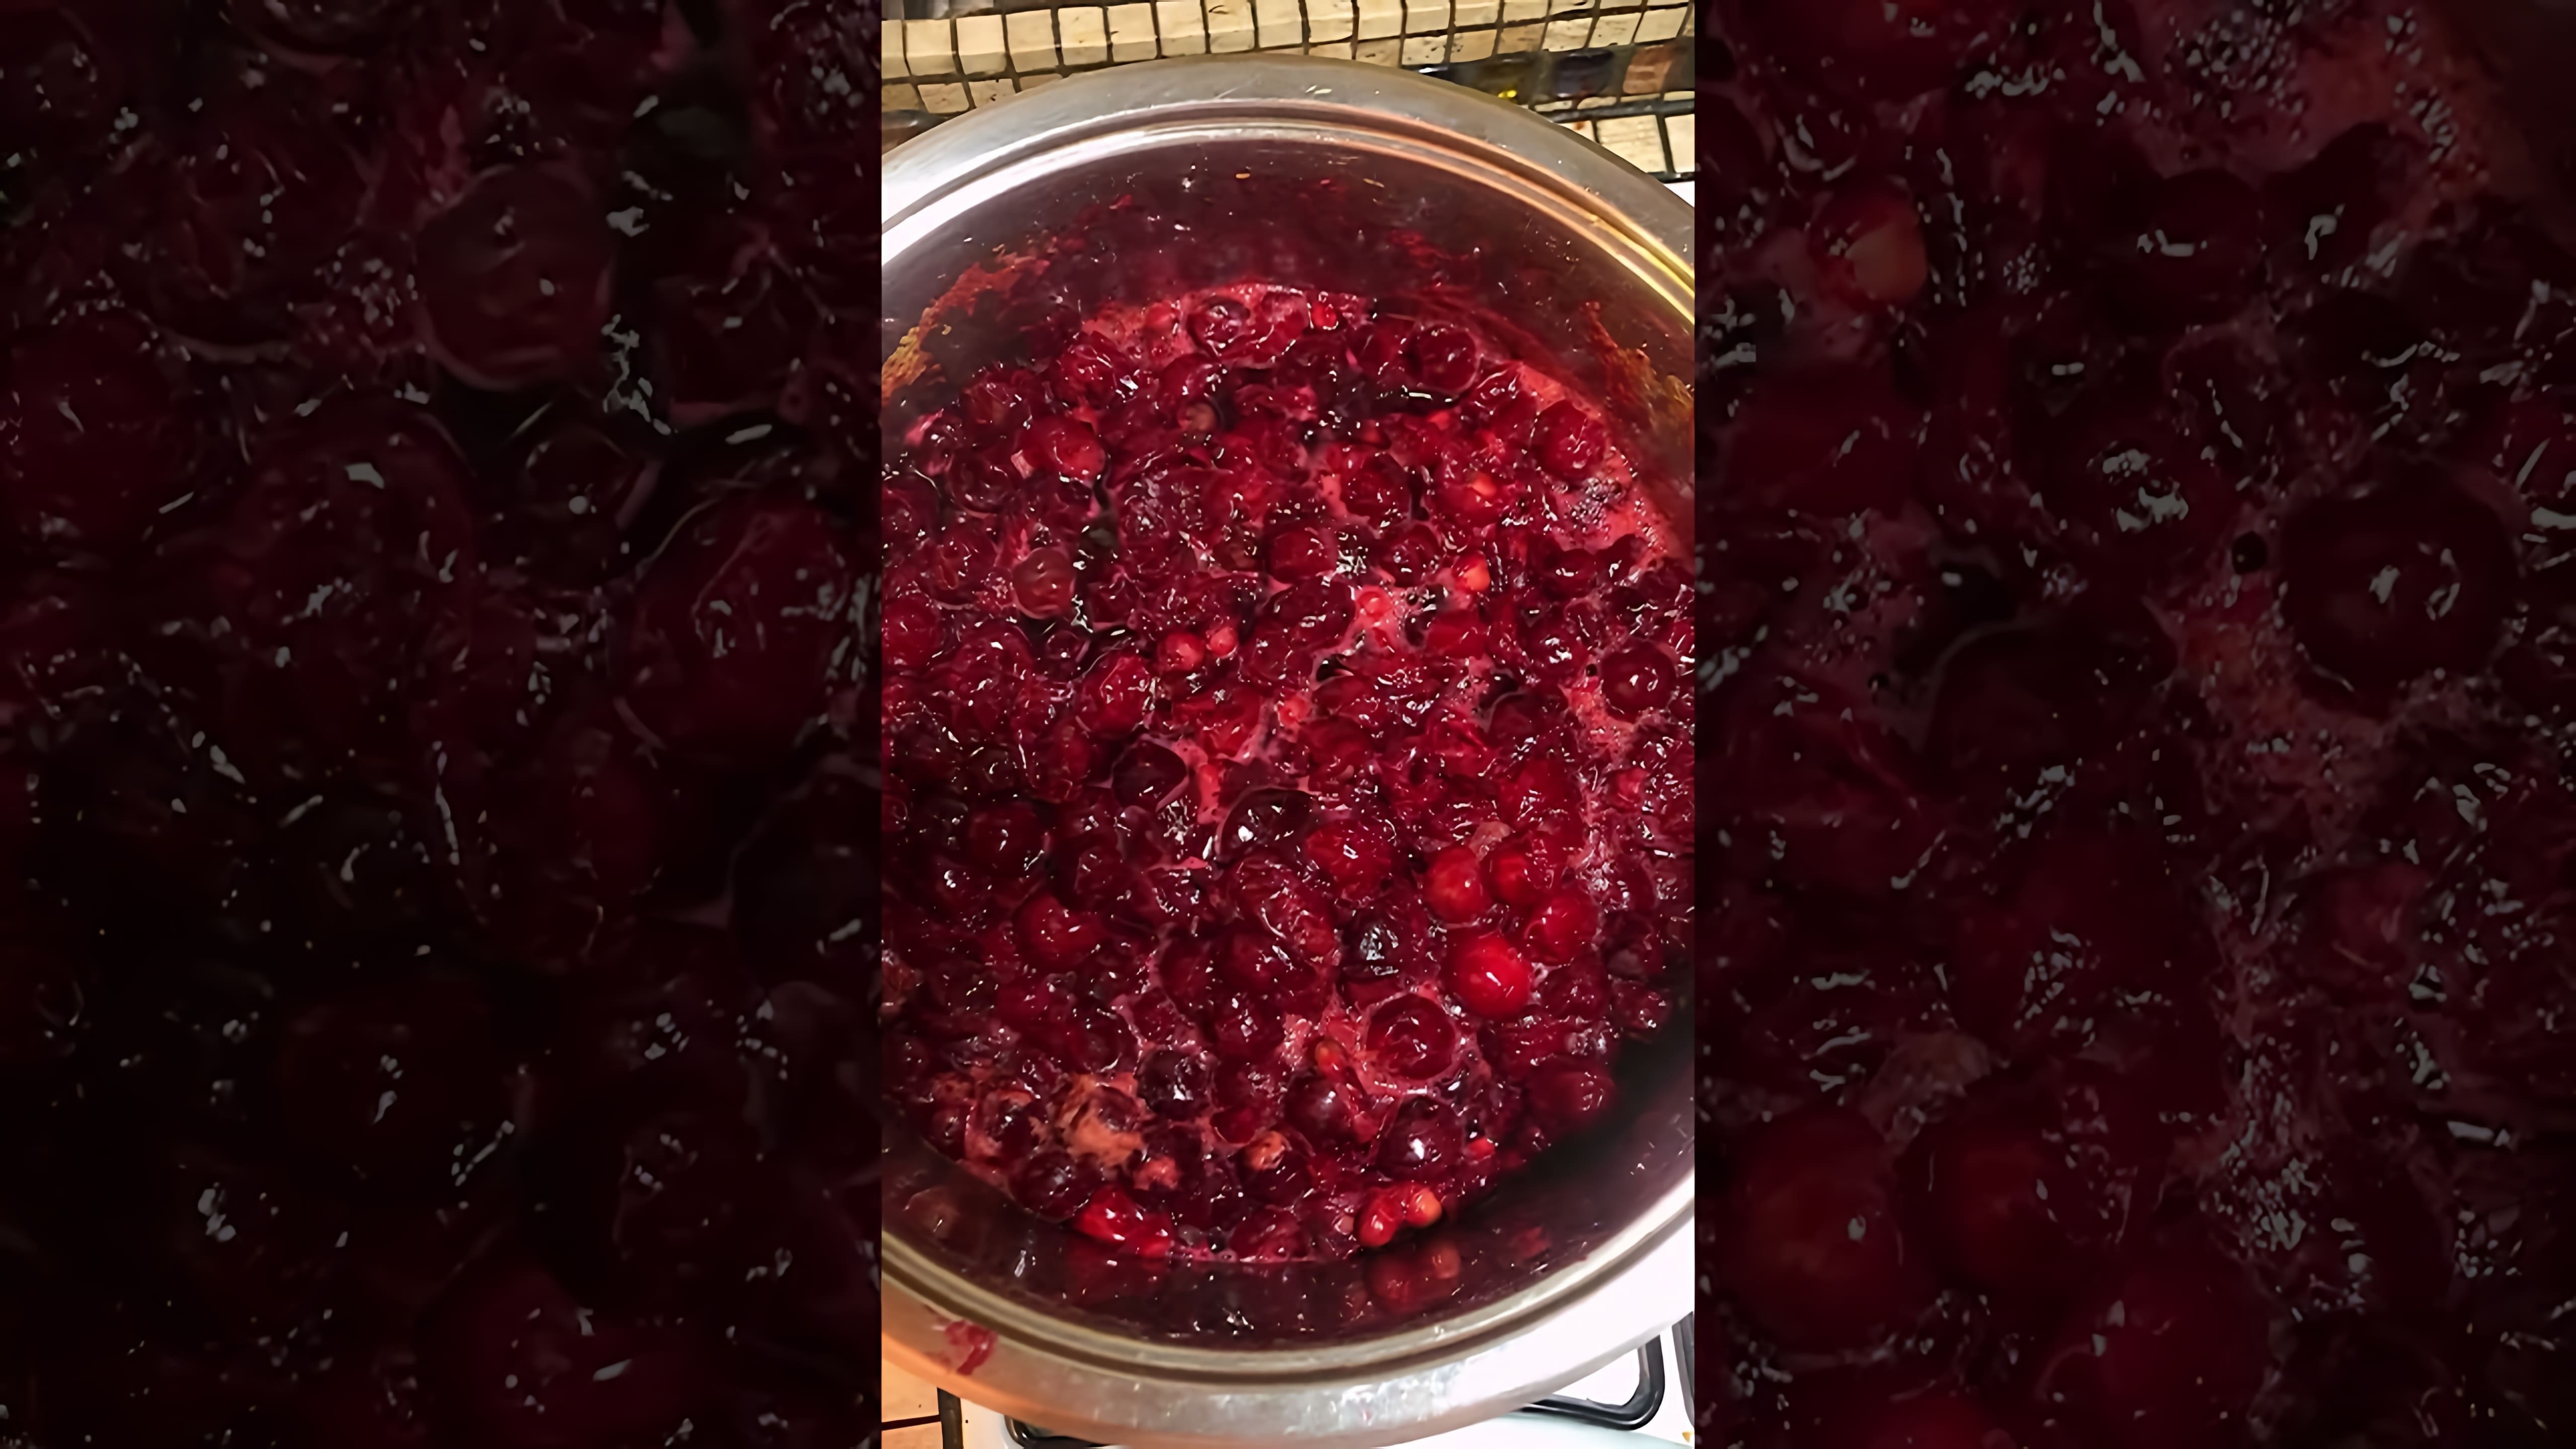 В этом видео демонстрируется процесс приготовления густого вишневого варенья без загустителей и уварки